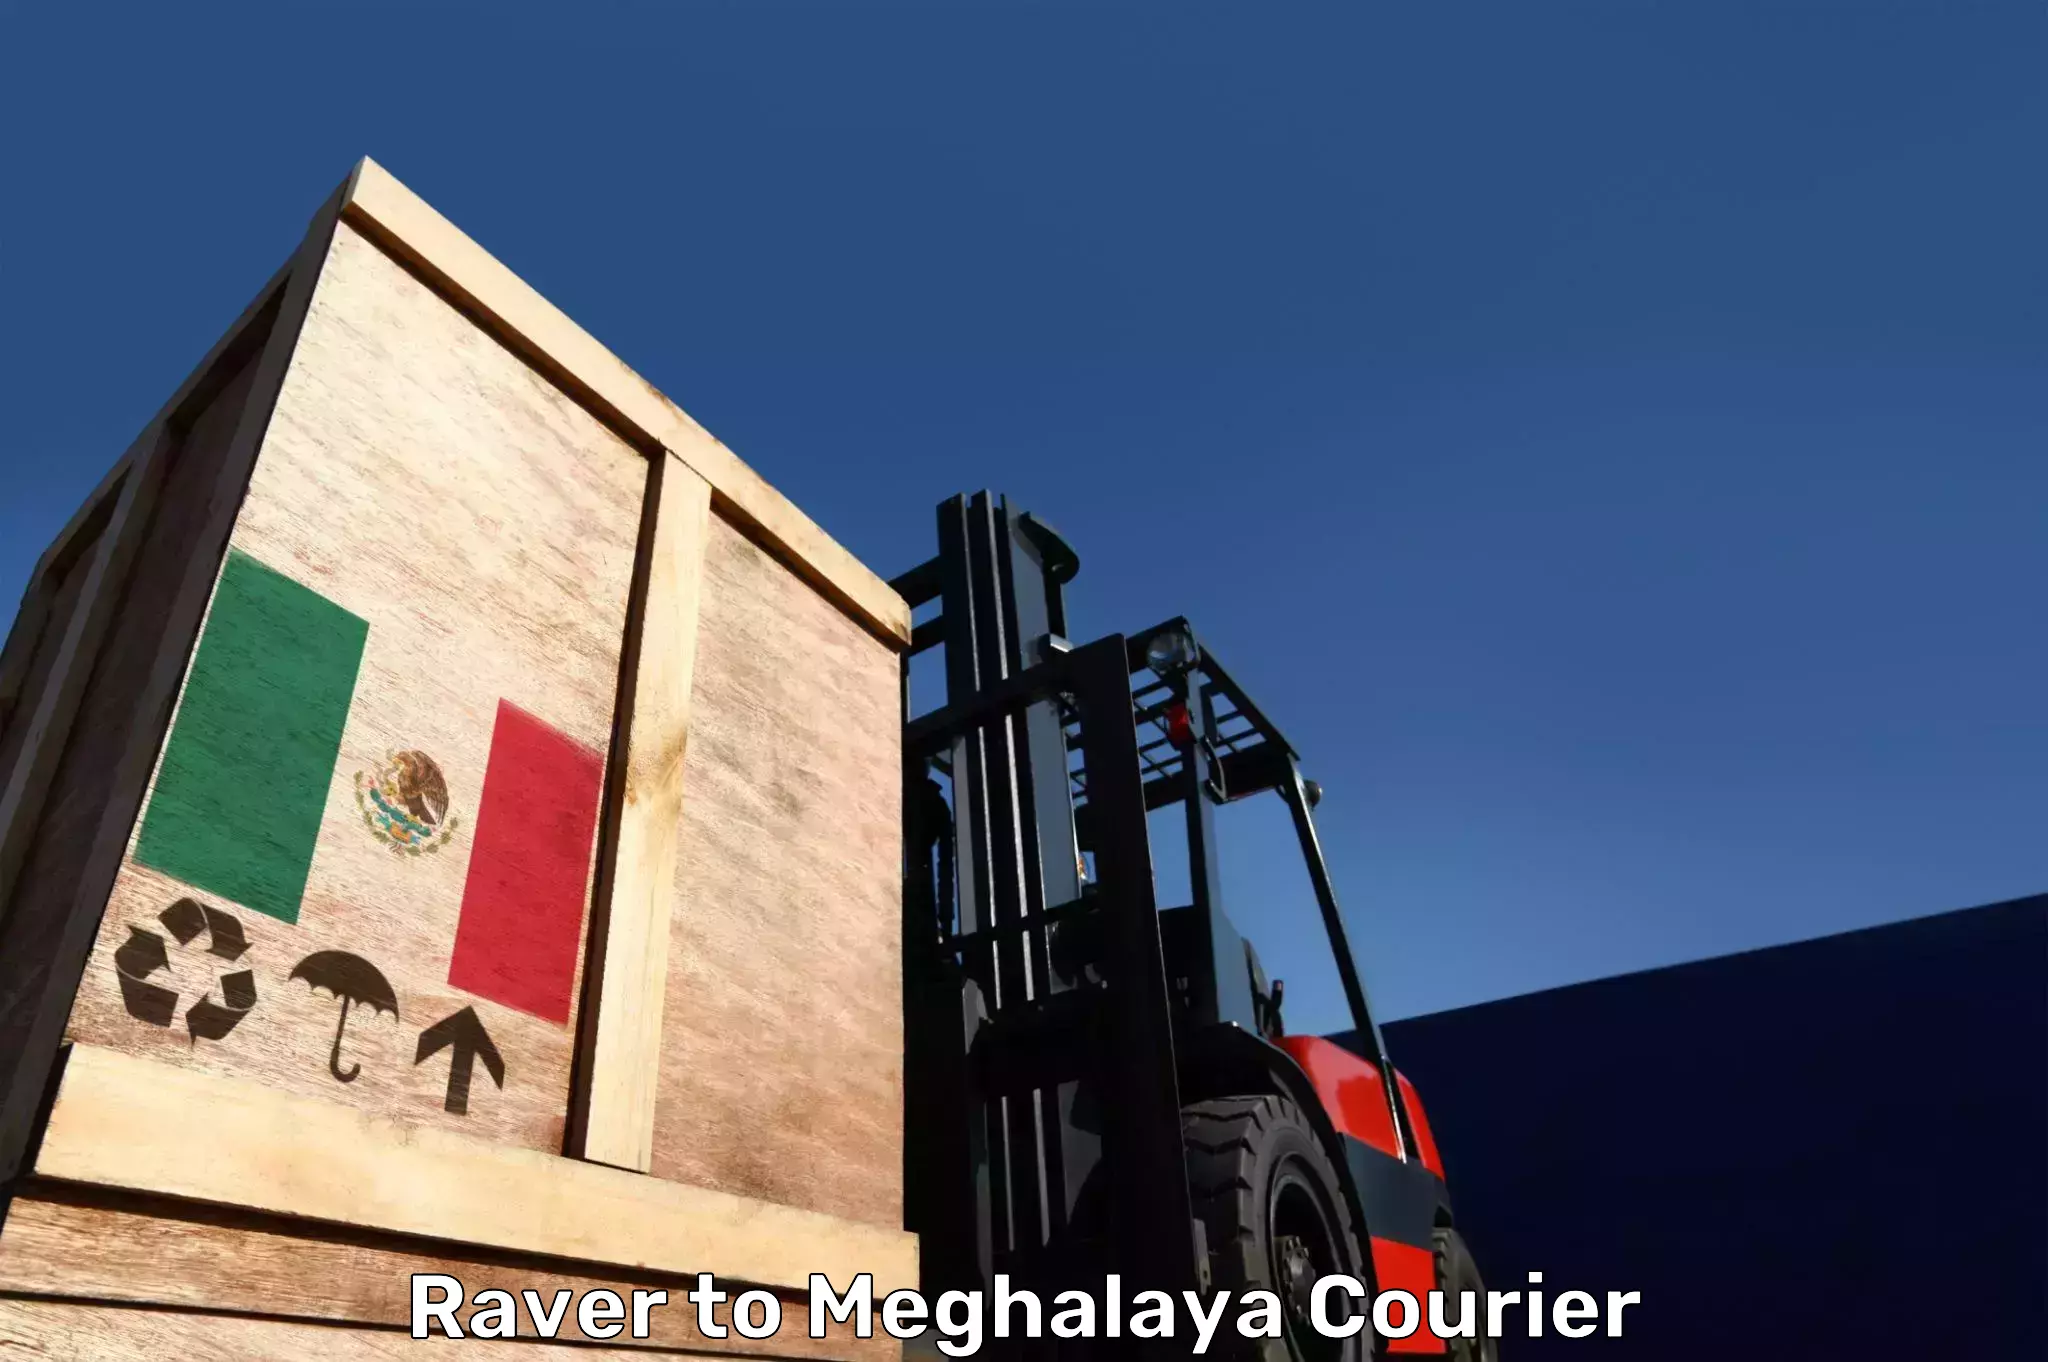 Luggage transport company Raver to Meghalaya